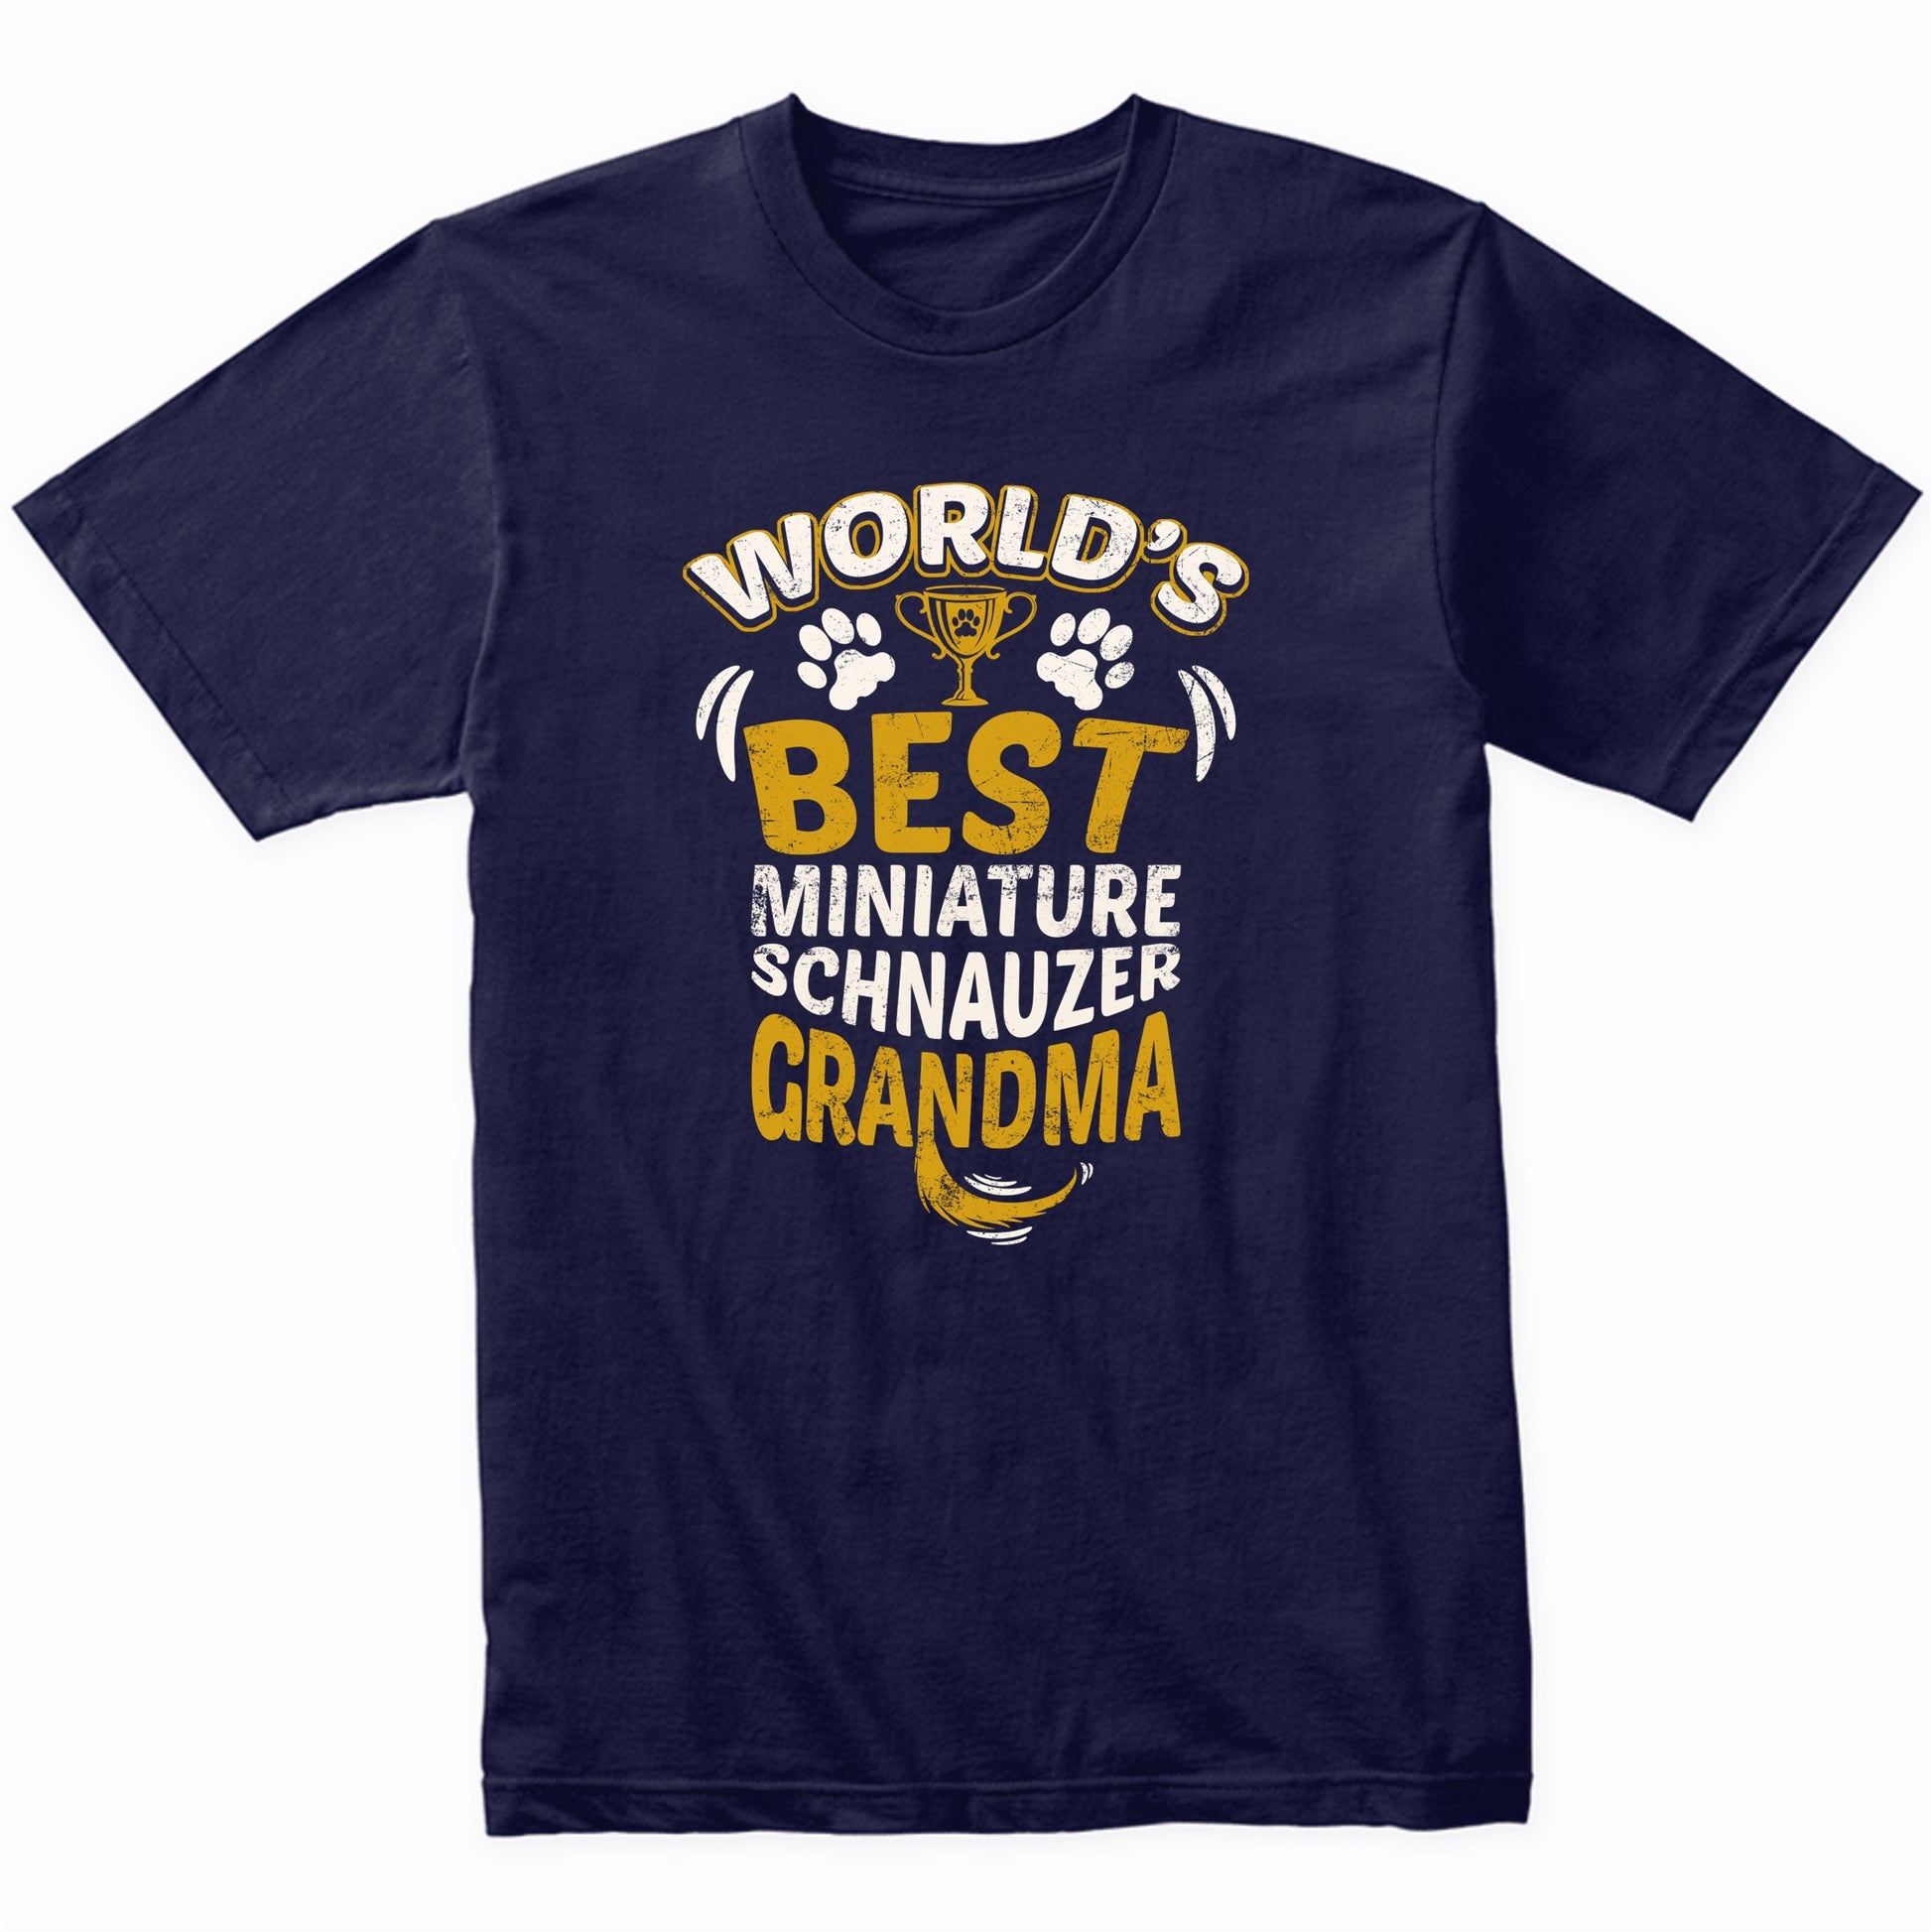 World's Best Miniature Schnauzer Grandma Graphic T-Shirt